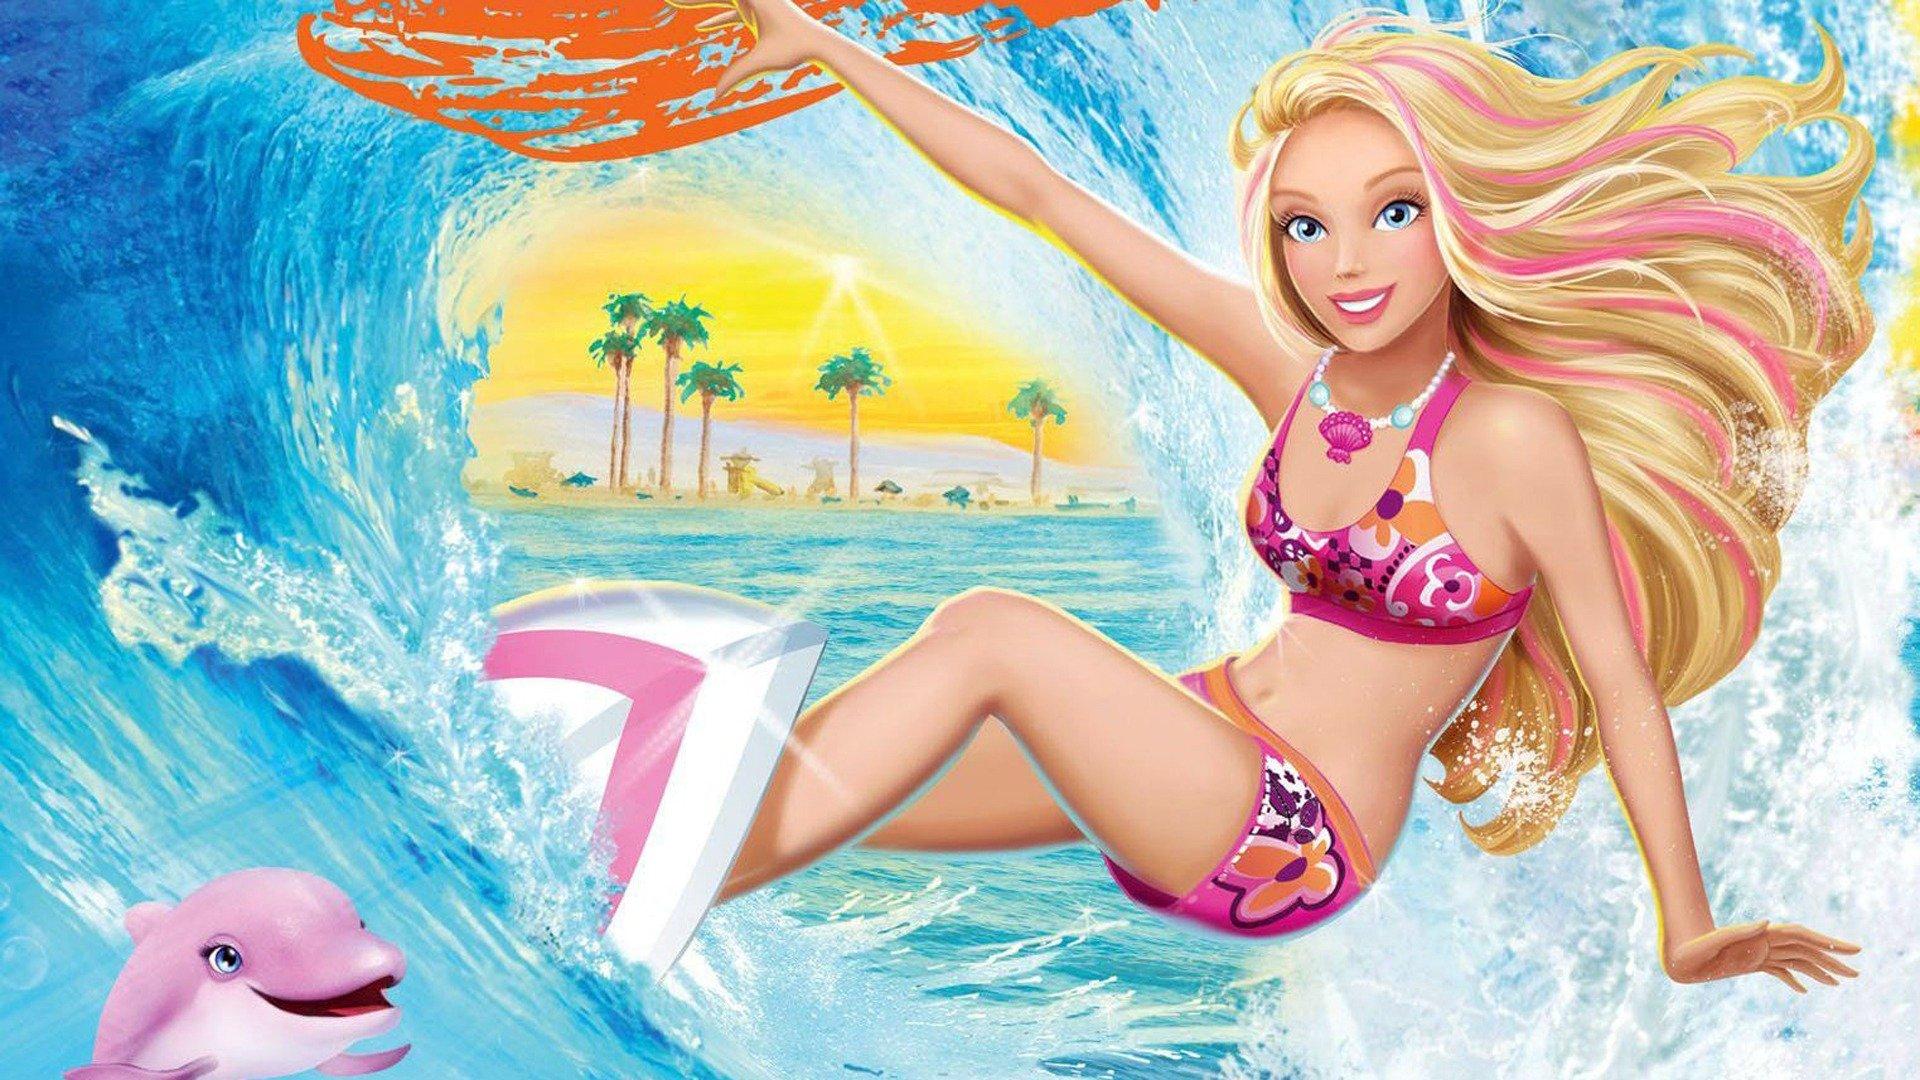 Barbie in A Mermaid Tale